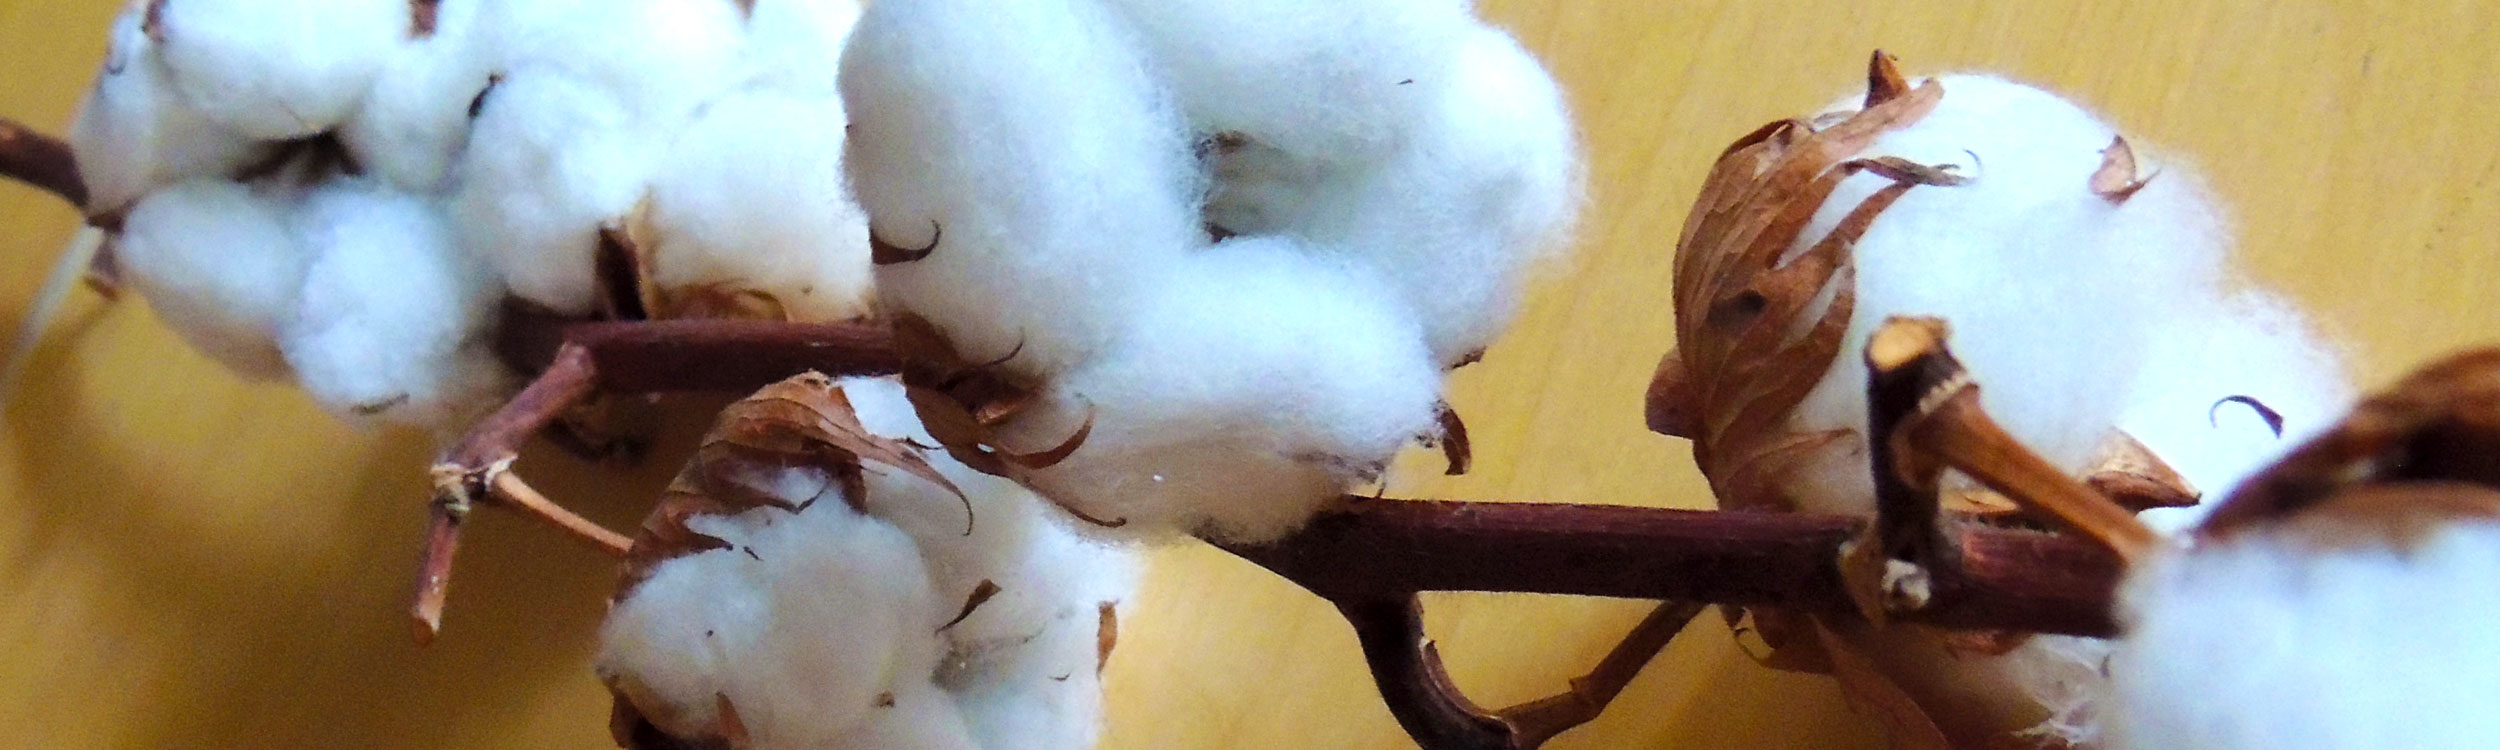 coton-tissage-artisanal